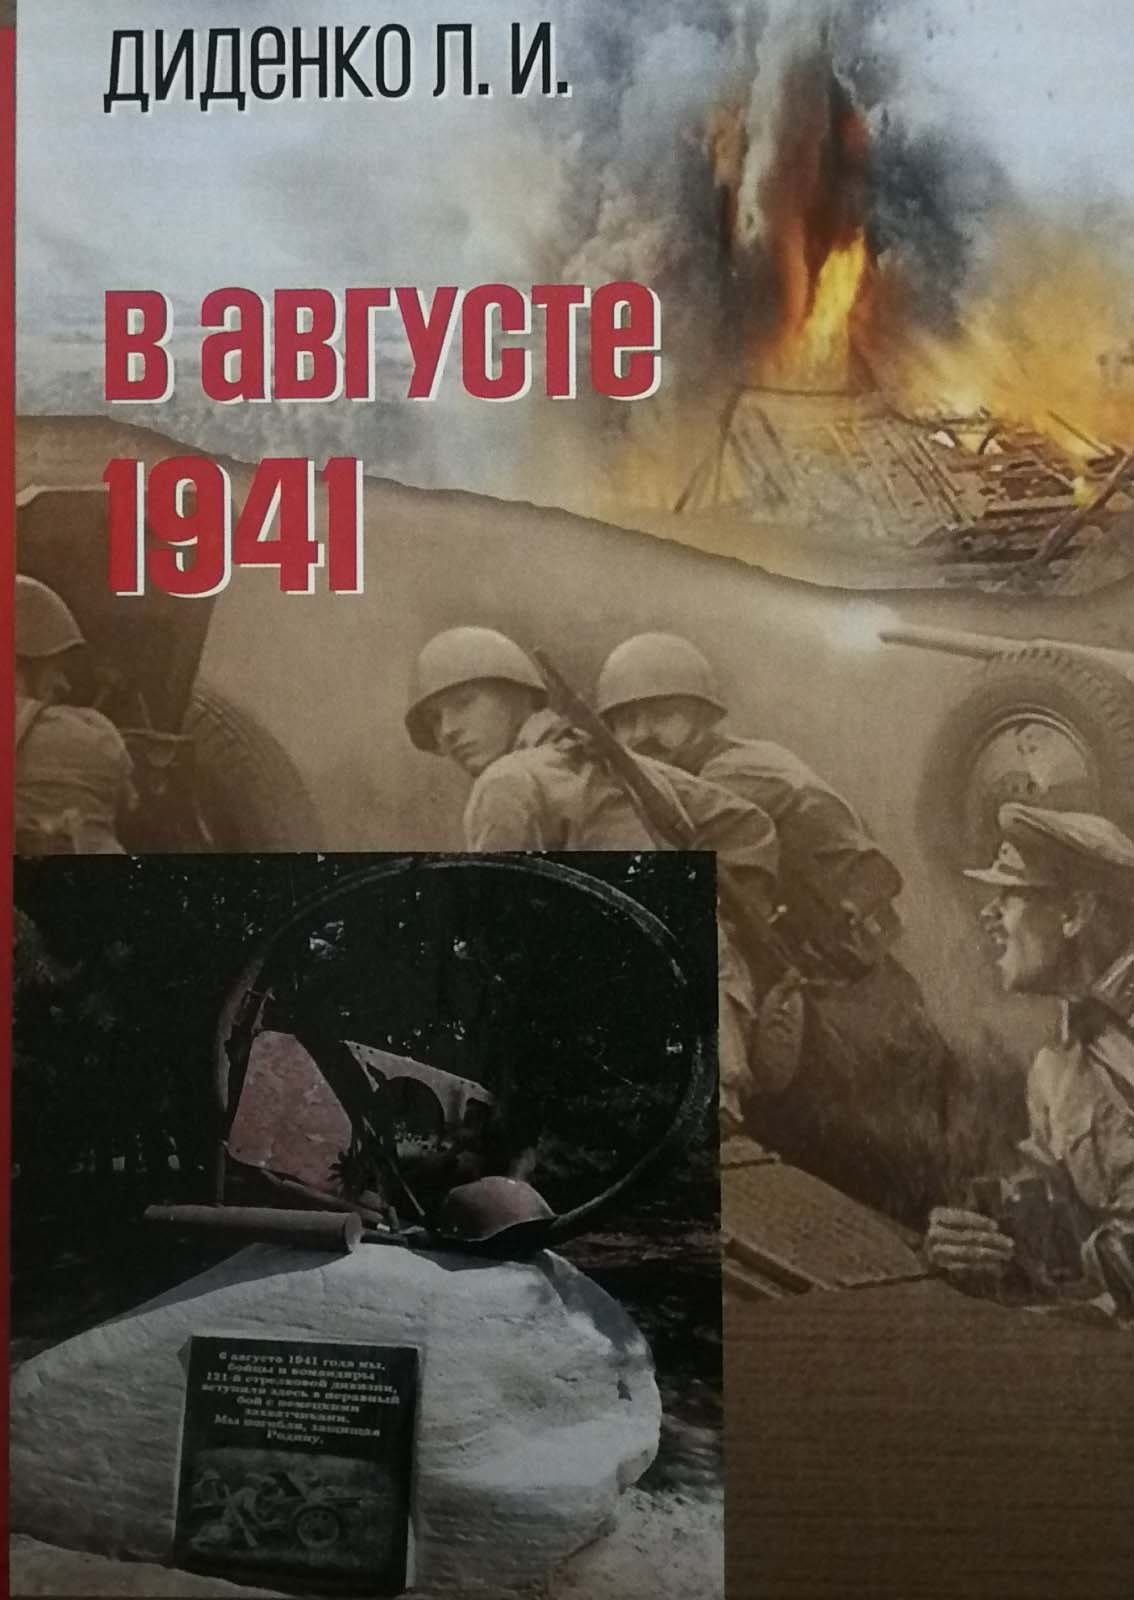 Презентация книги Л. И. Диденко "В августе 1941"